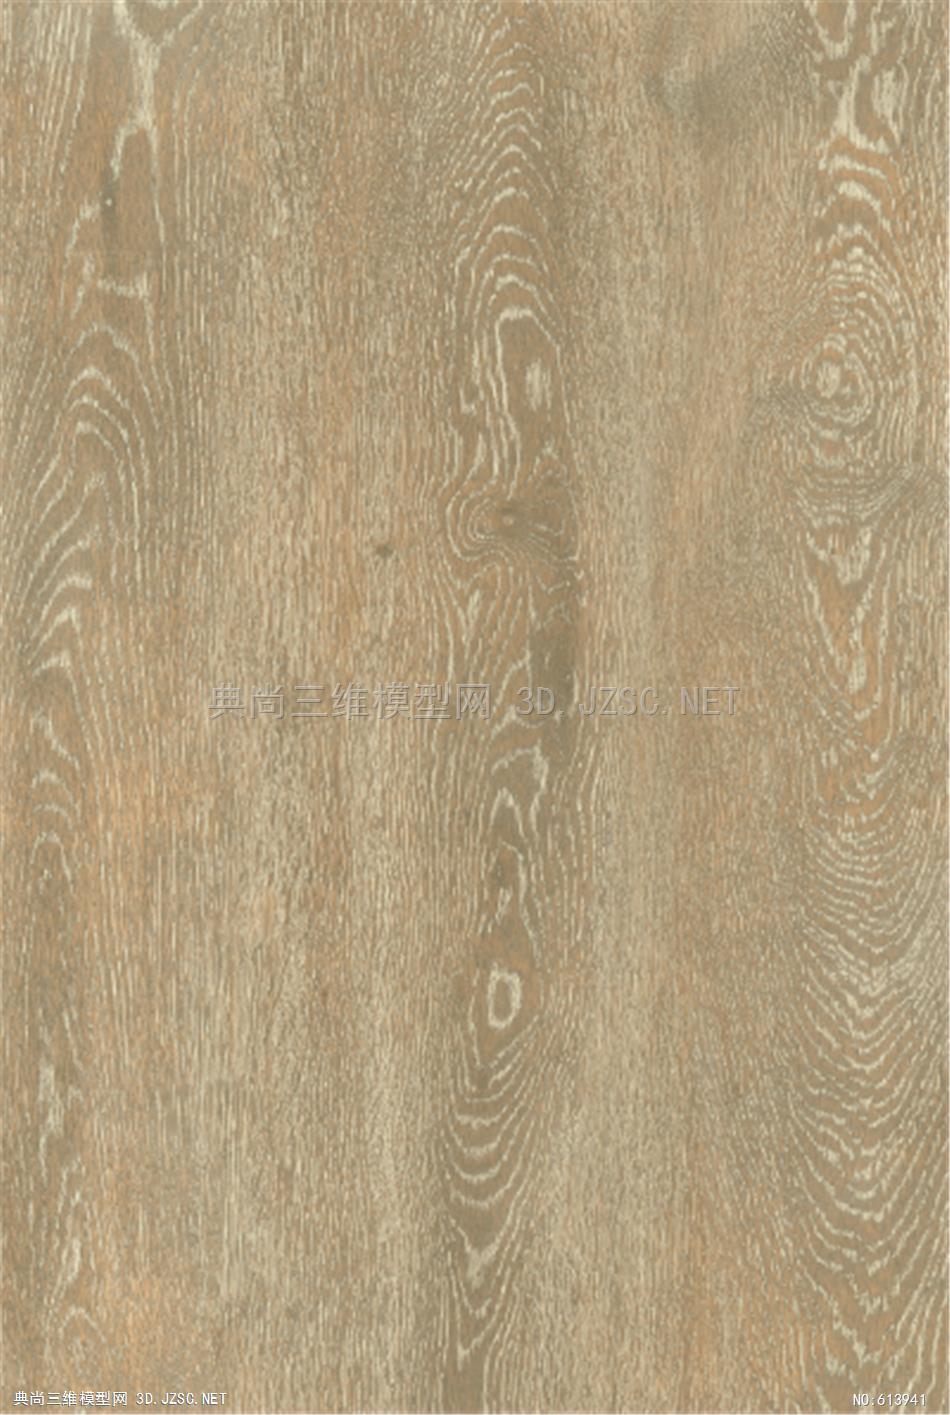 木饰面 木纹 木材  高清材质贴图 (201)